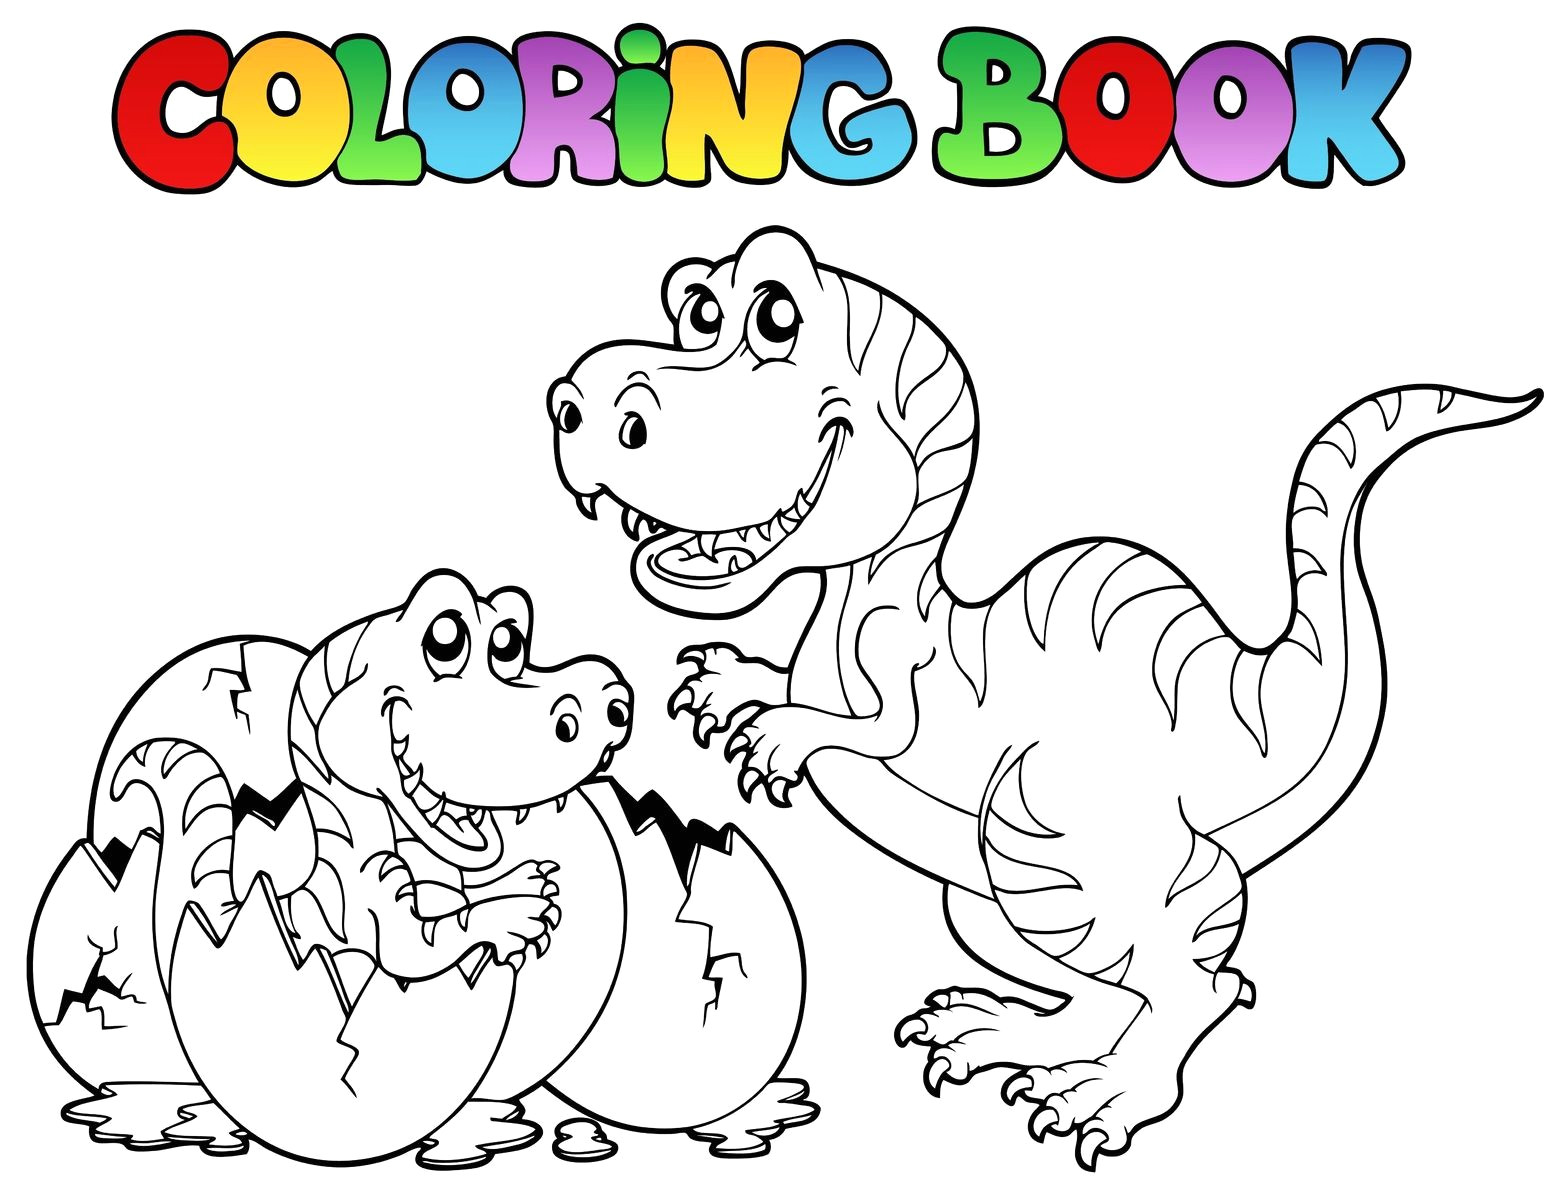 coloriage pour enfant en ligne prepossessing dora filename coloring page for funny coloriages enfants 4 on with hd resolution 808x1016 pixels print photo enf